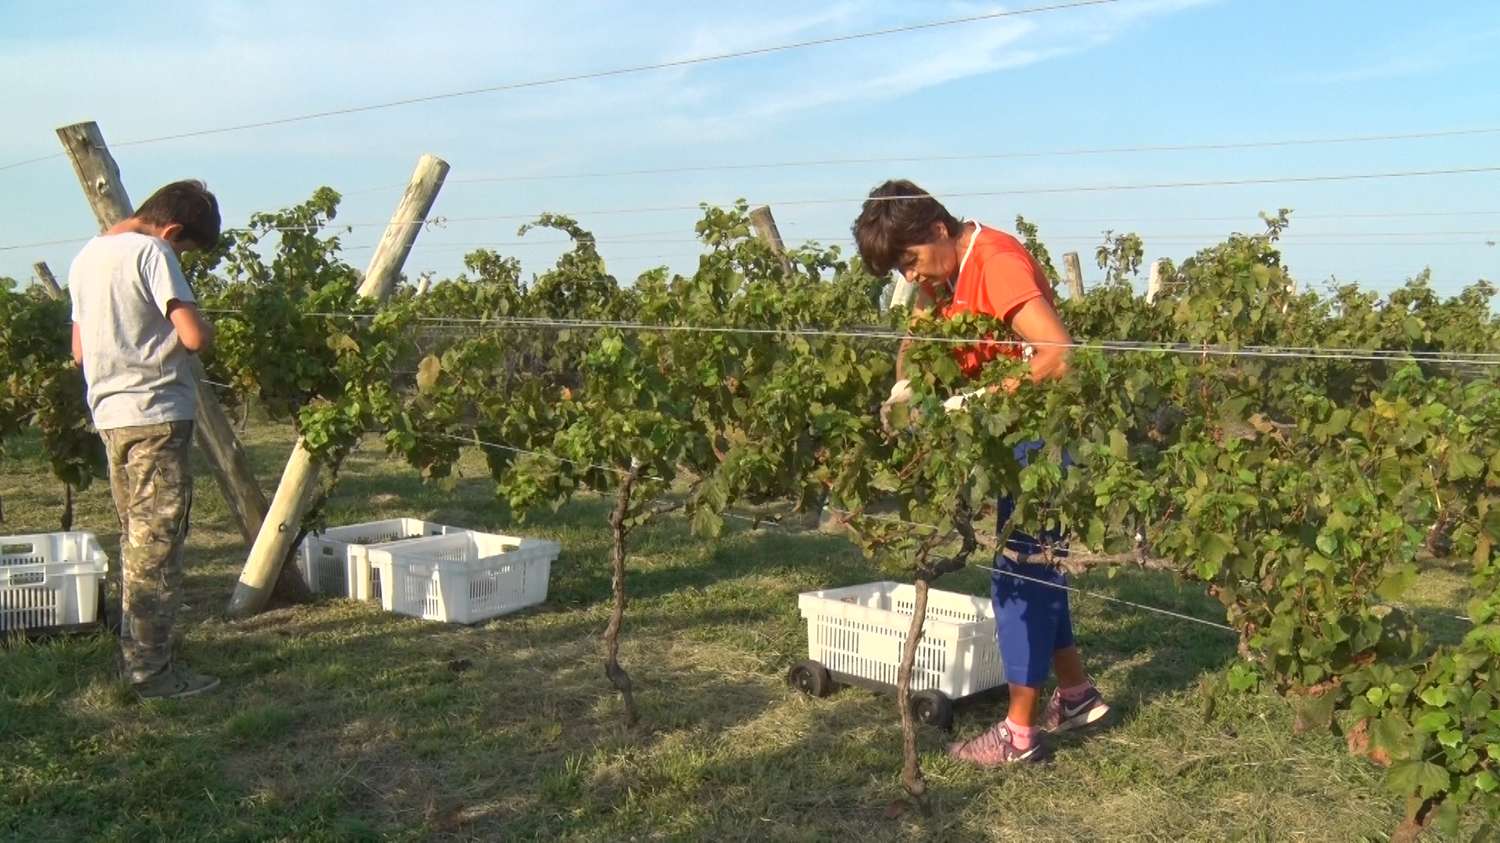 Puso primera la cosecha de las uvas entrerrianas modelo 2022